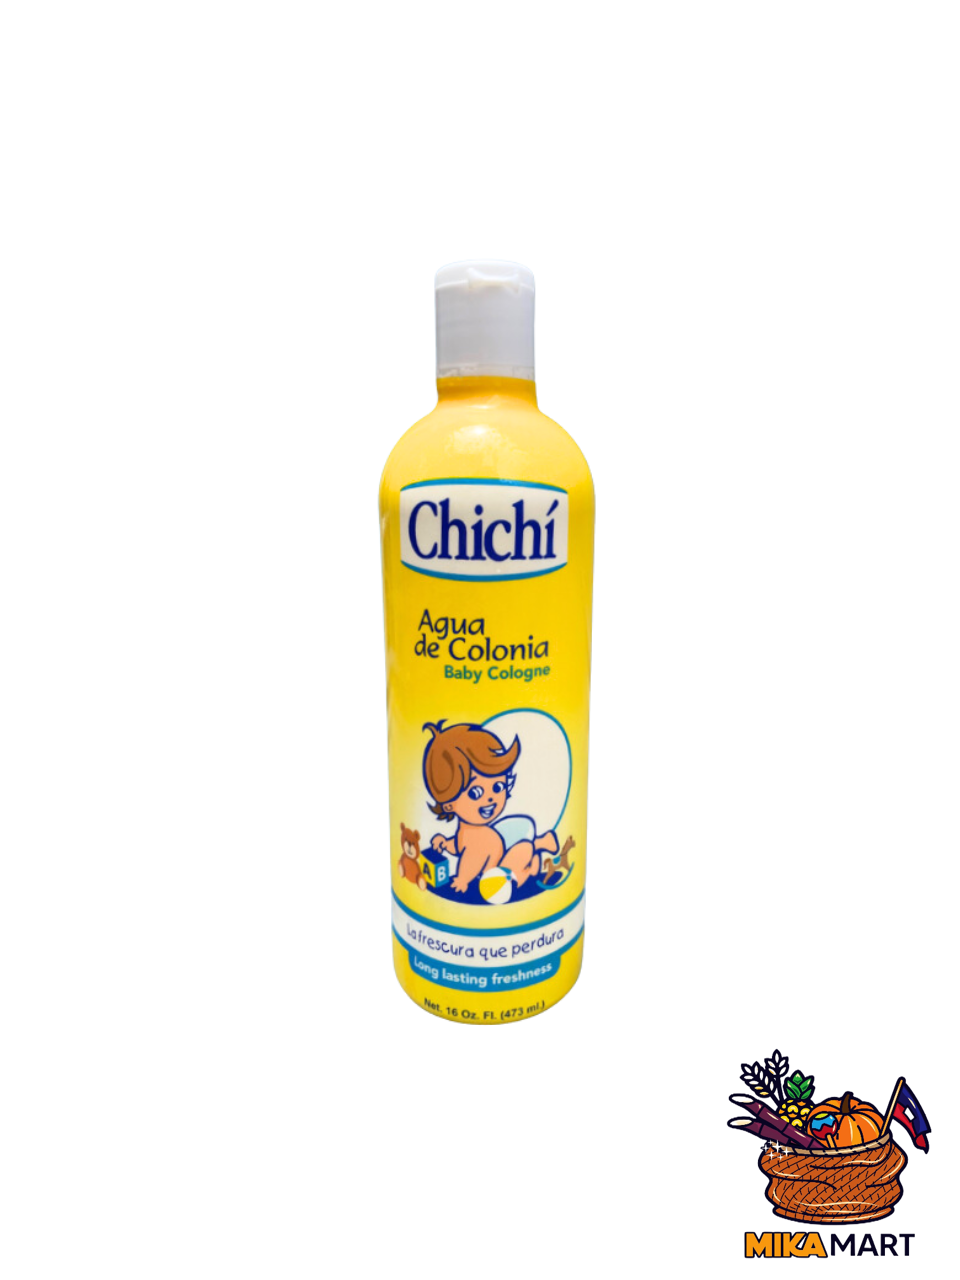 Case of 16 oz Chichí Bottle